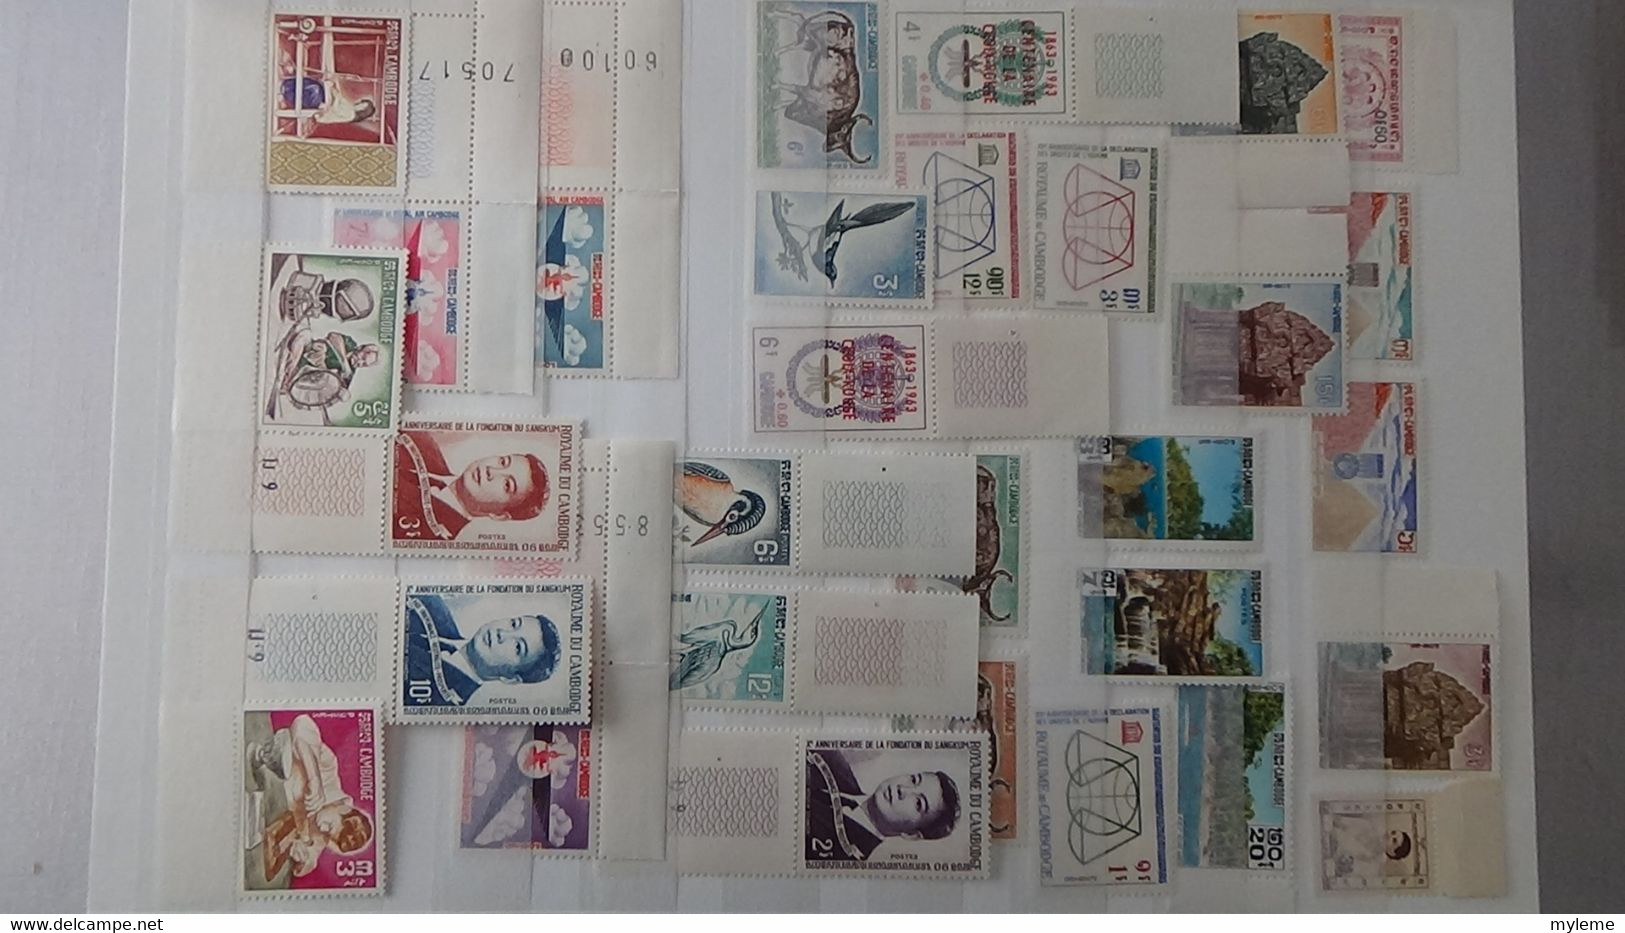 L44 Collection timbres ** de différents pays d'Afrique dont Algérie, Cambodge, Cameroun, Centrafri ... Voir commentaires